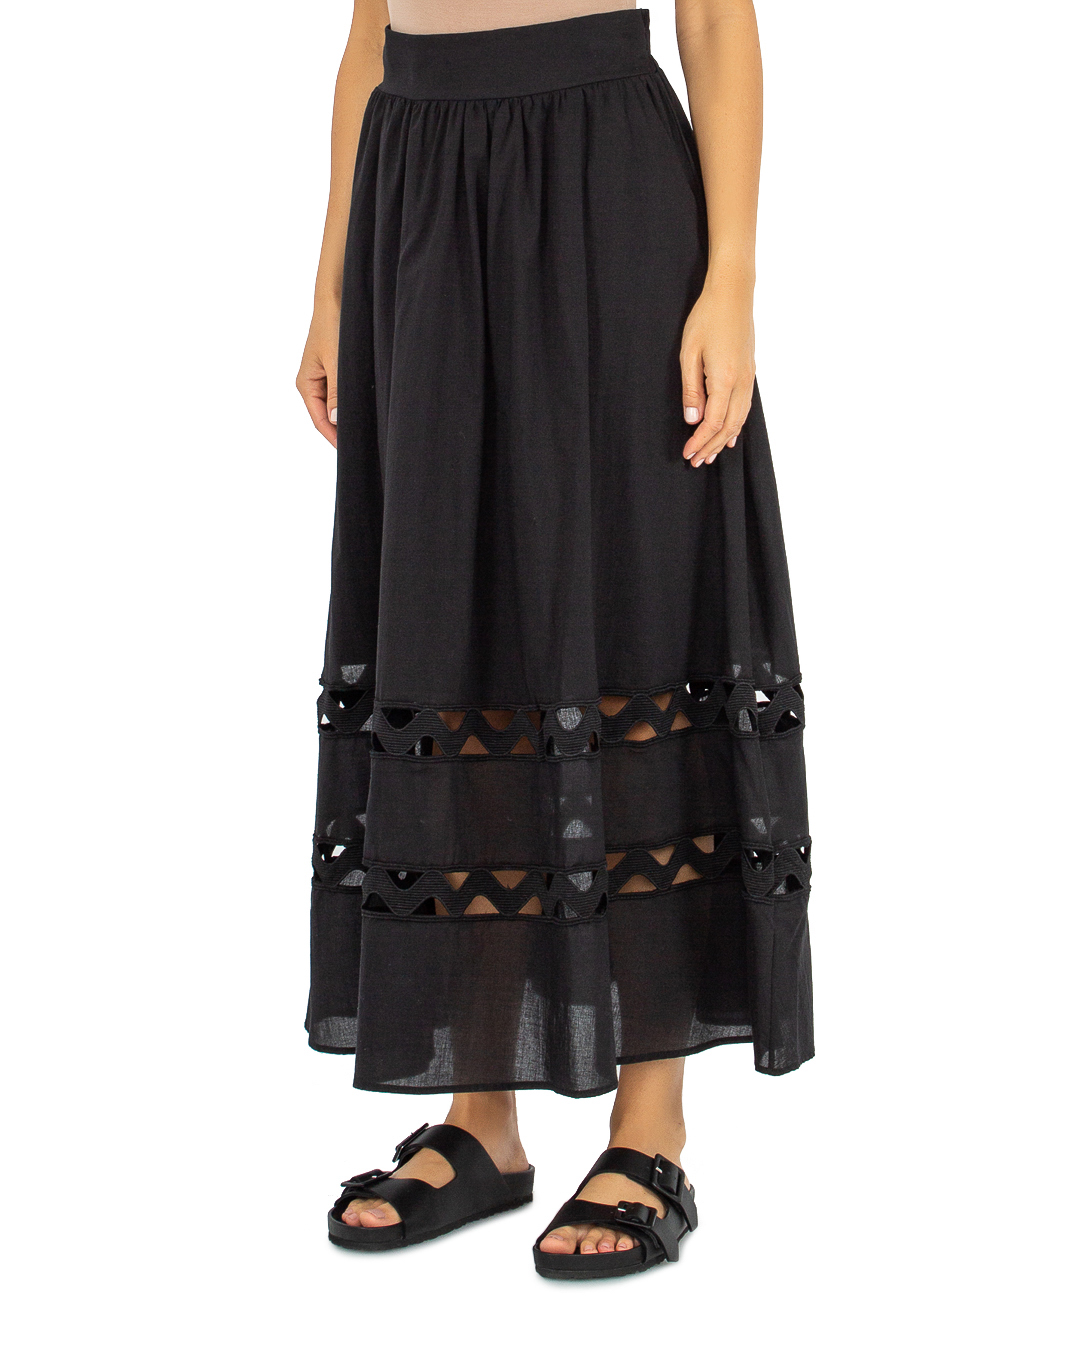 юбка ICONA BY KAOS PP5LE013 черный 40, размер 40 - фото 3